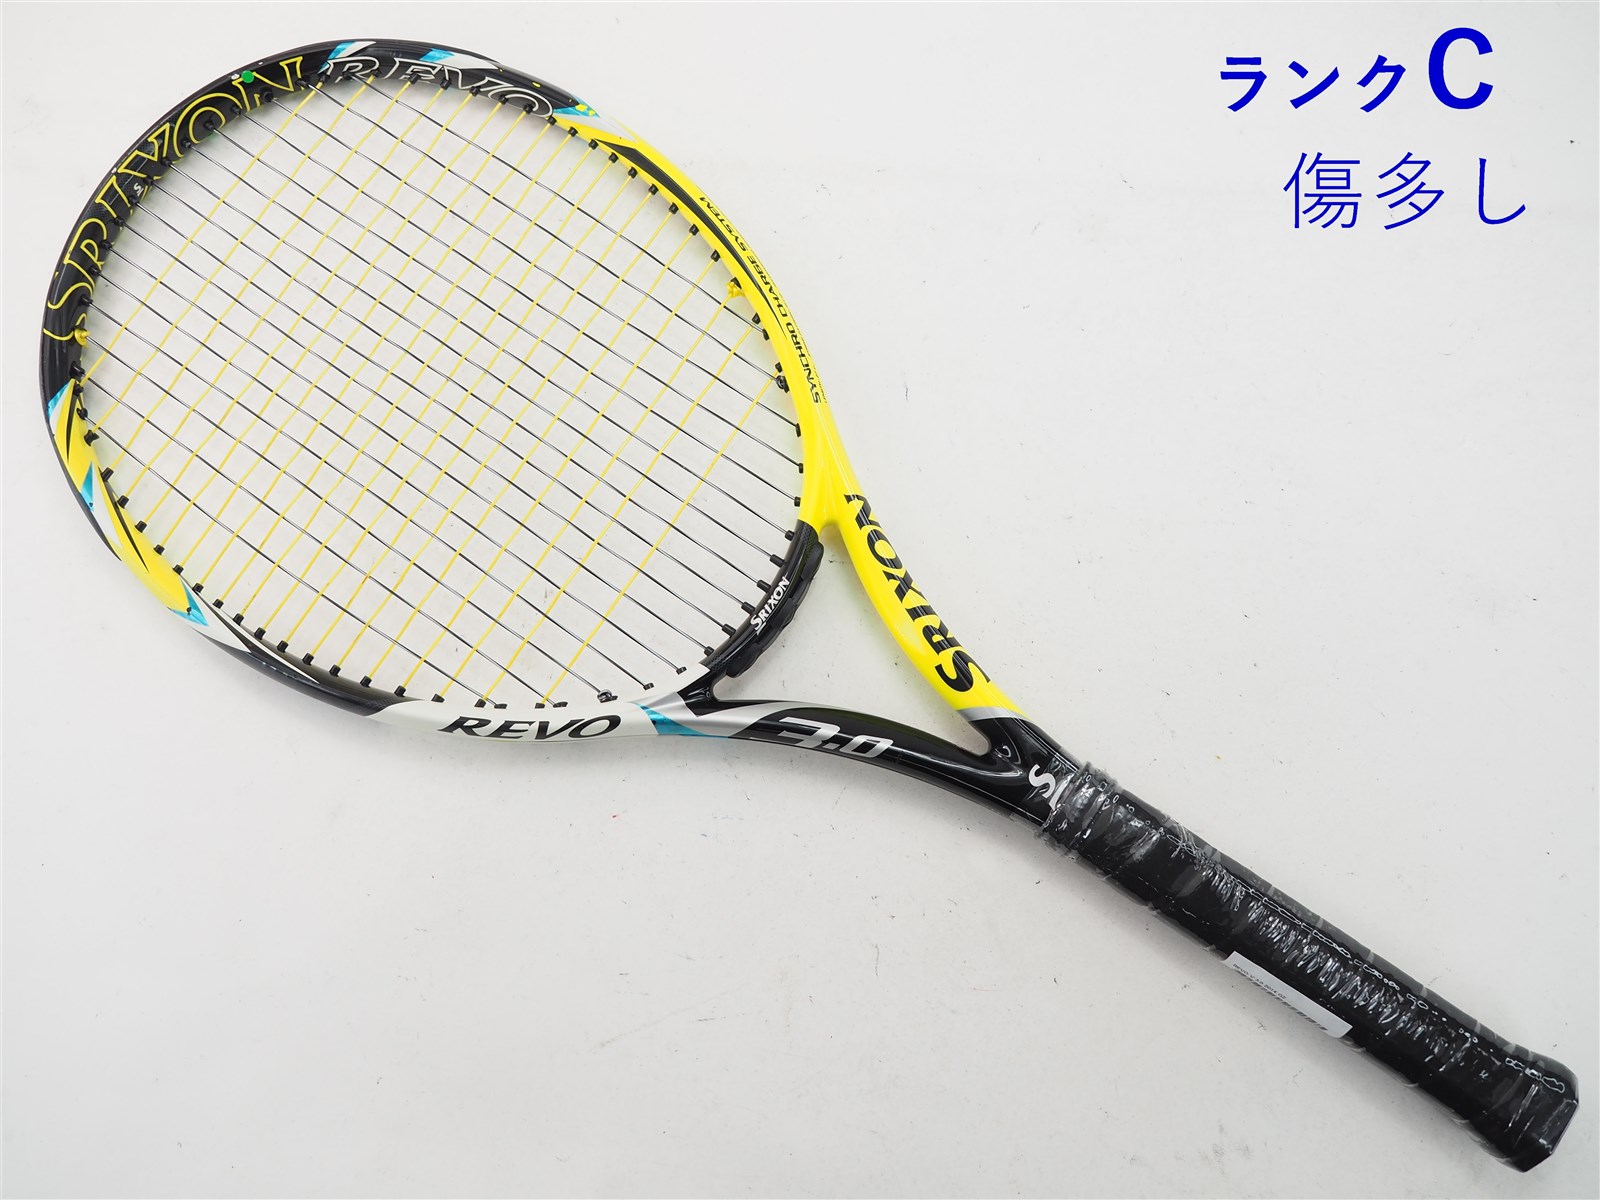 テニスラケット スリクソン レヴォ ブイ 3.0 2014年モデル (G2)SRIXON REVO V 3.0 2014